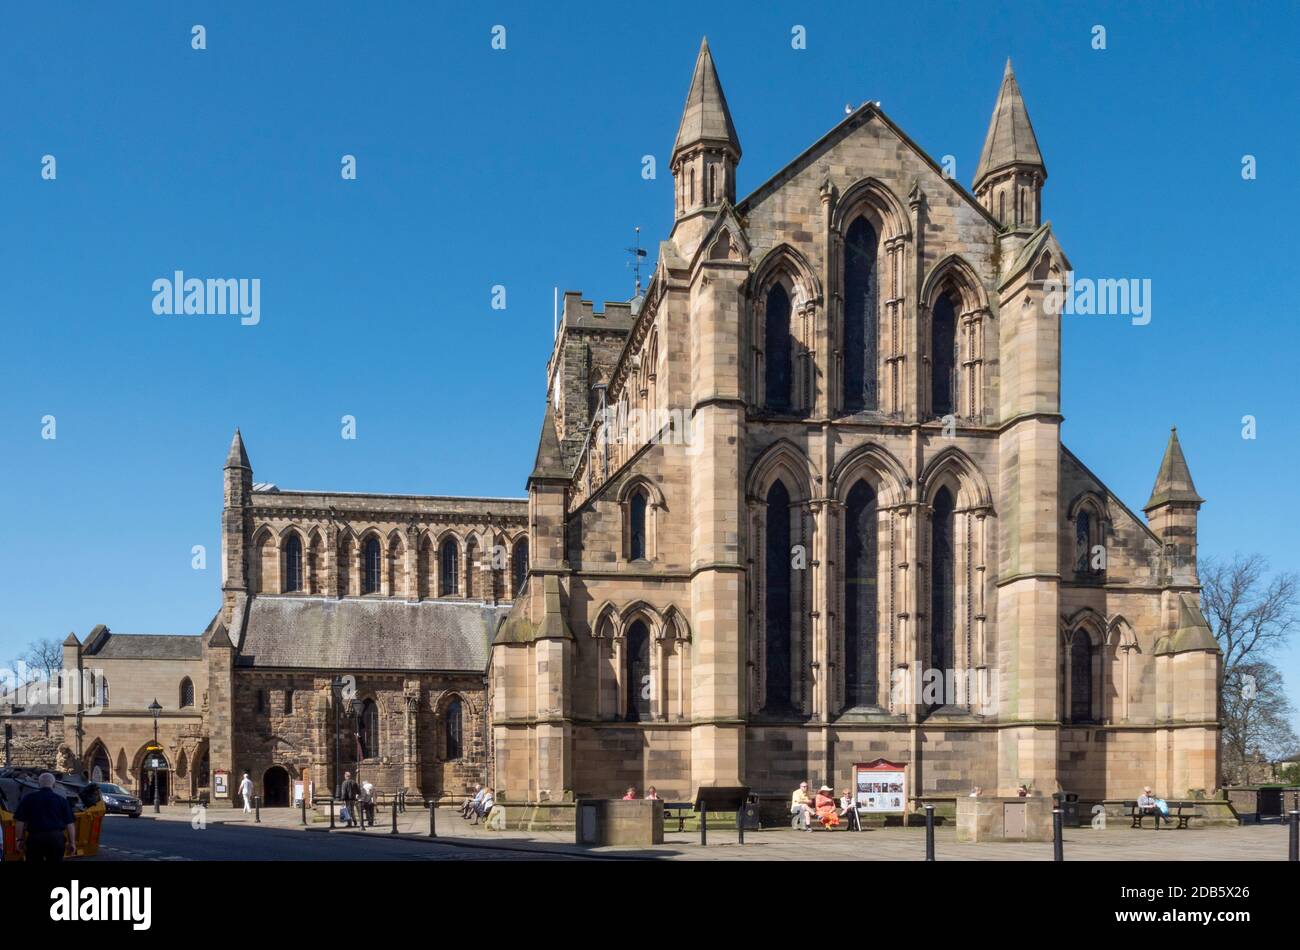 Hexham Abbey, Hexham, Northumberland, England, UK Stock Photo